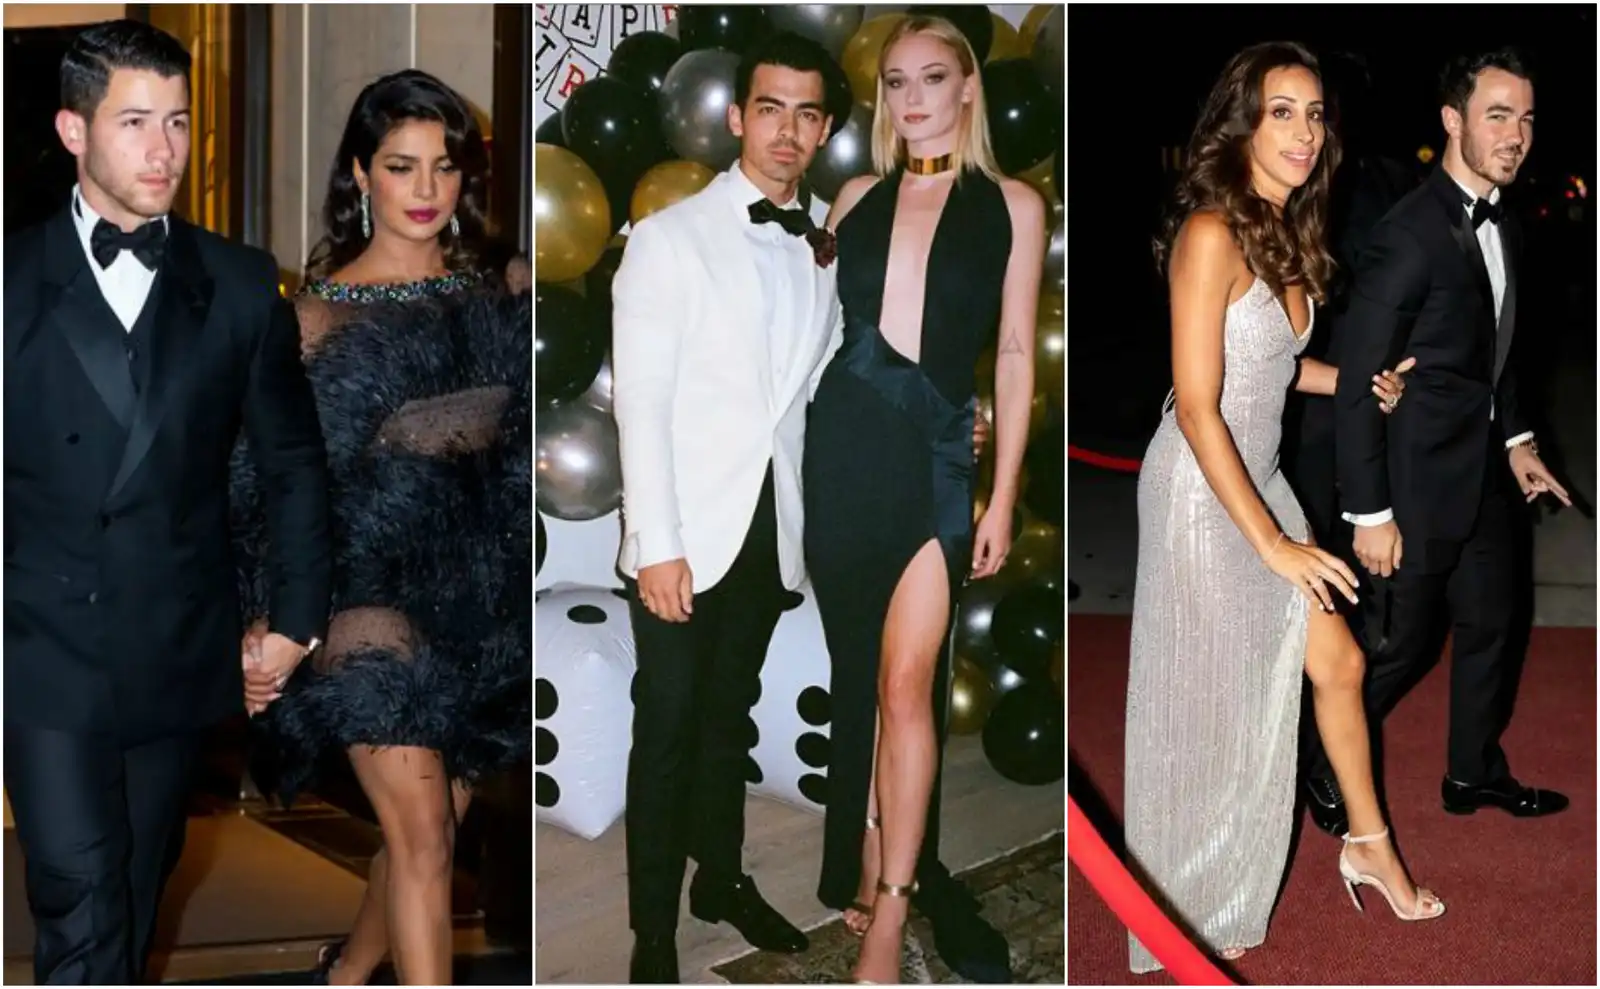 Priyanka Chopra, Nick Jonas, Sophie Turner Stir Things Up At Joe Jonas’ Jamed Bond Themed Birthday Party